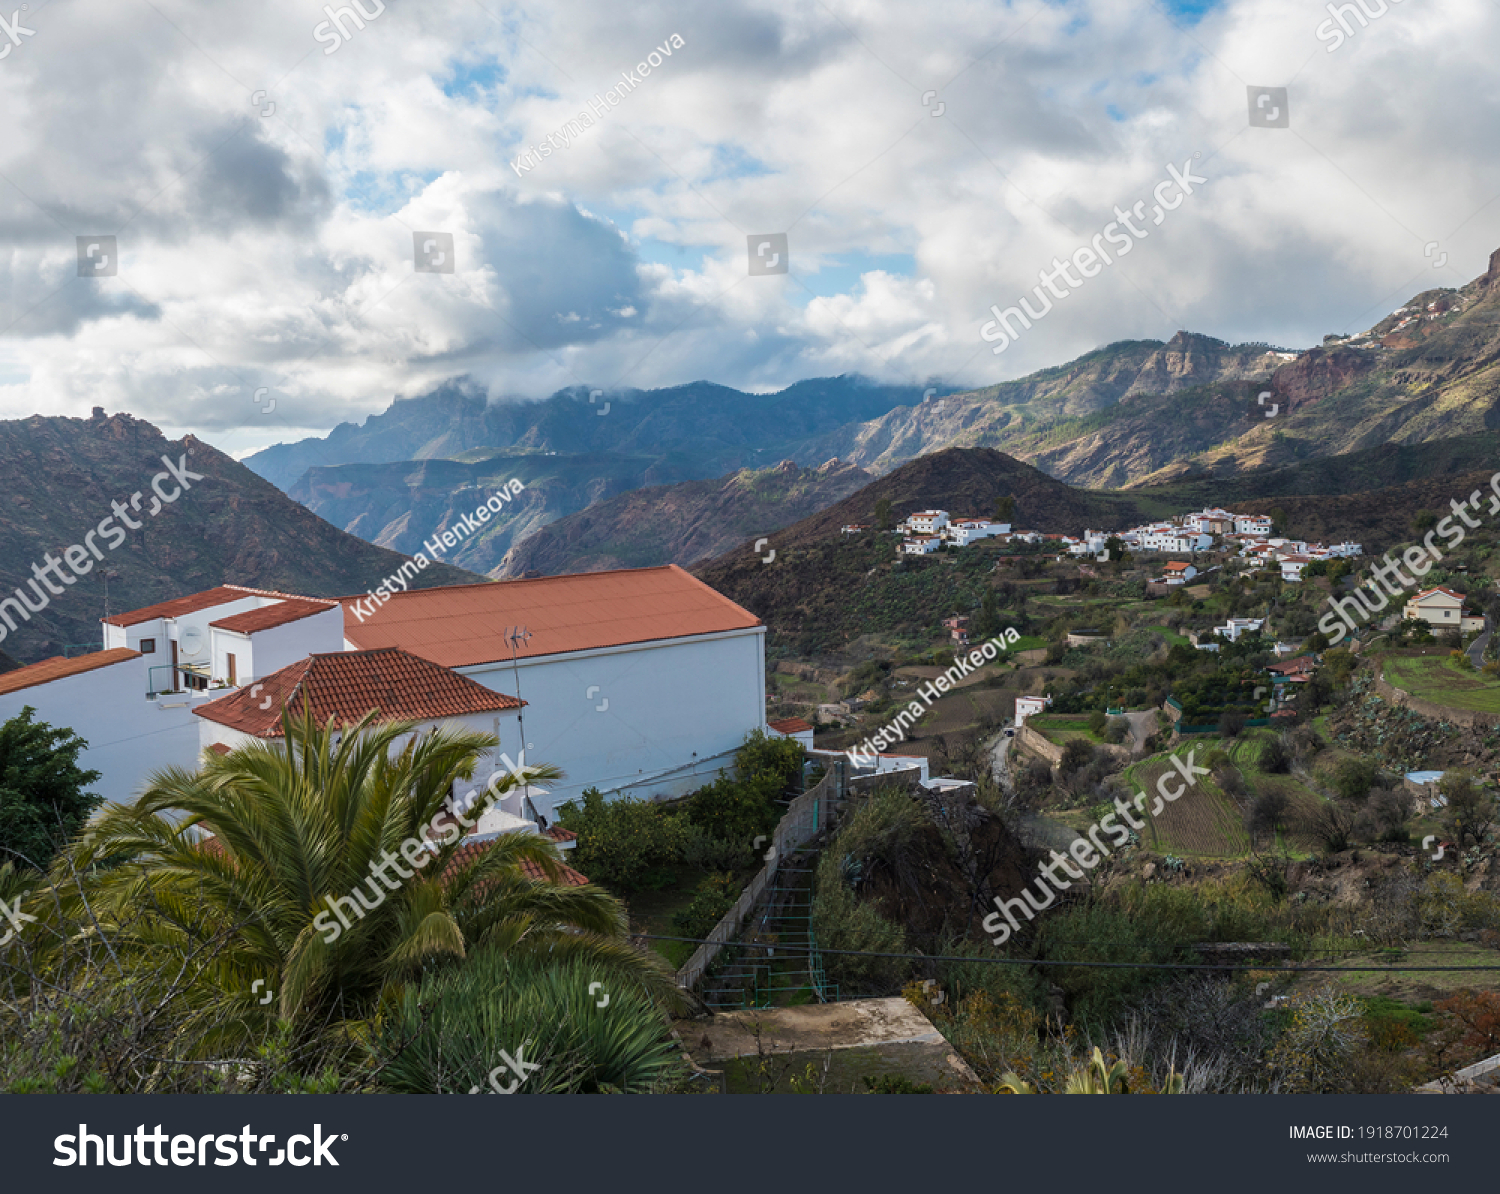 Picturesque Canarian village Tejeda in mountain valley scenery and view of Caldera de Tejeda Gran Canaria, Canary Islands, Spain #1918701224